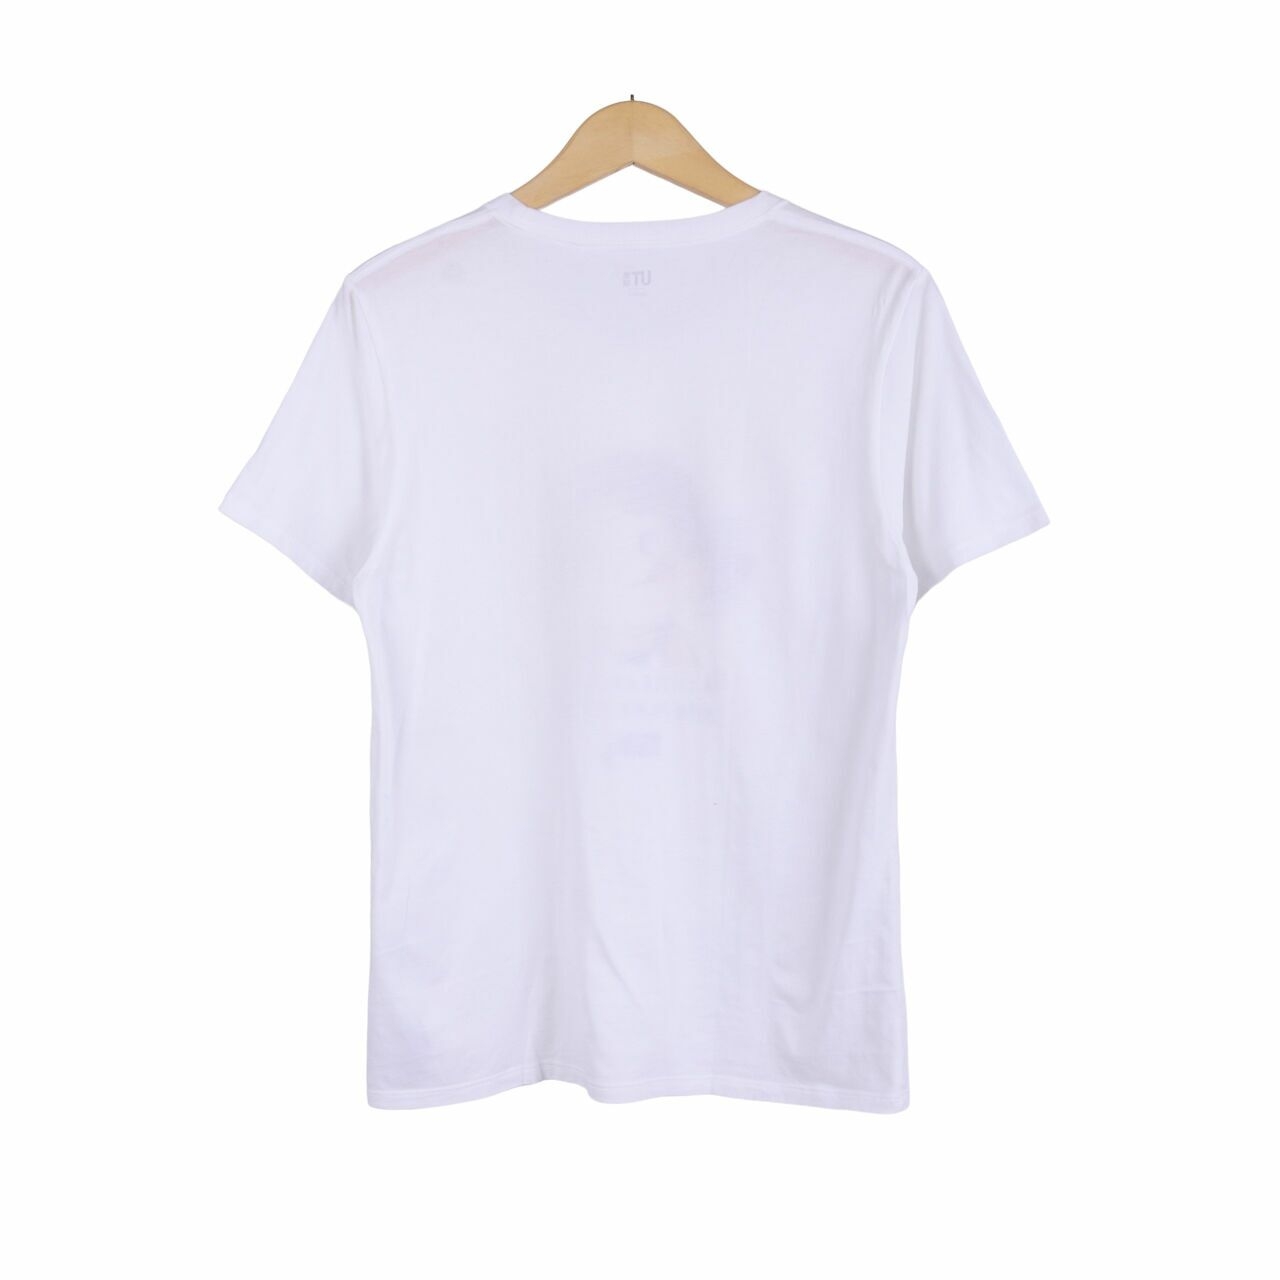 UNIQLO White T-Shirt